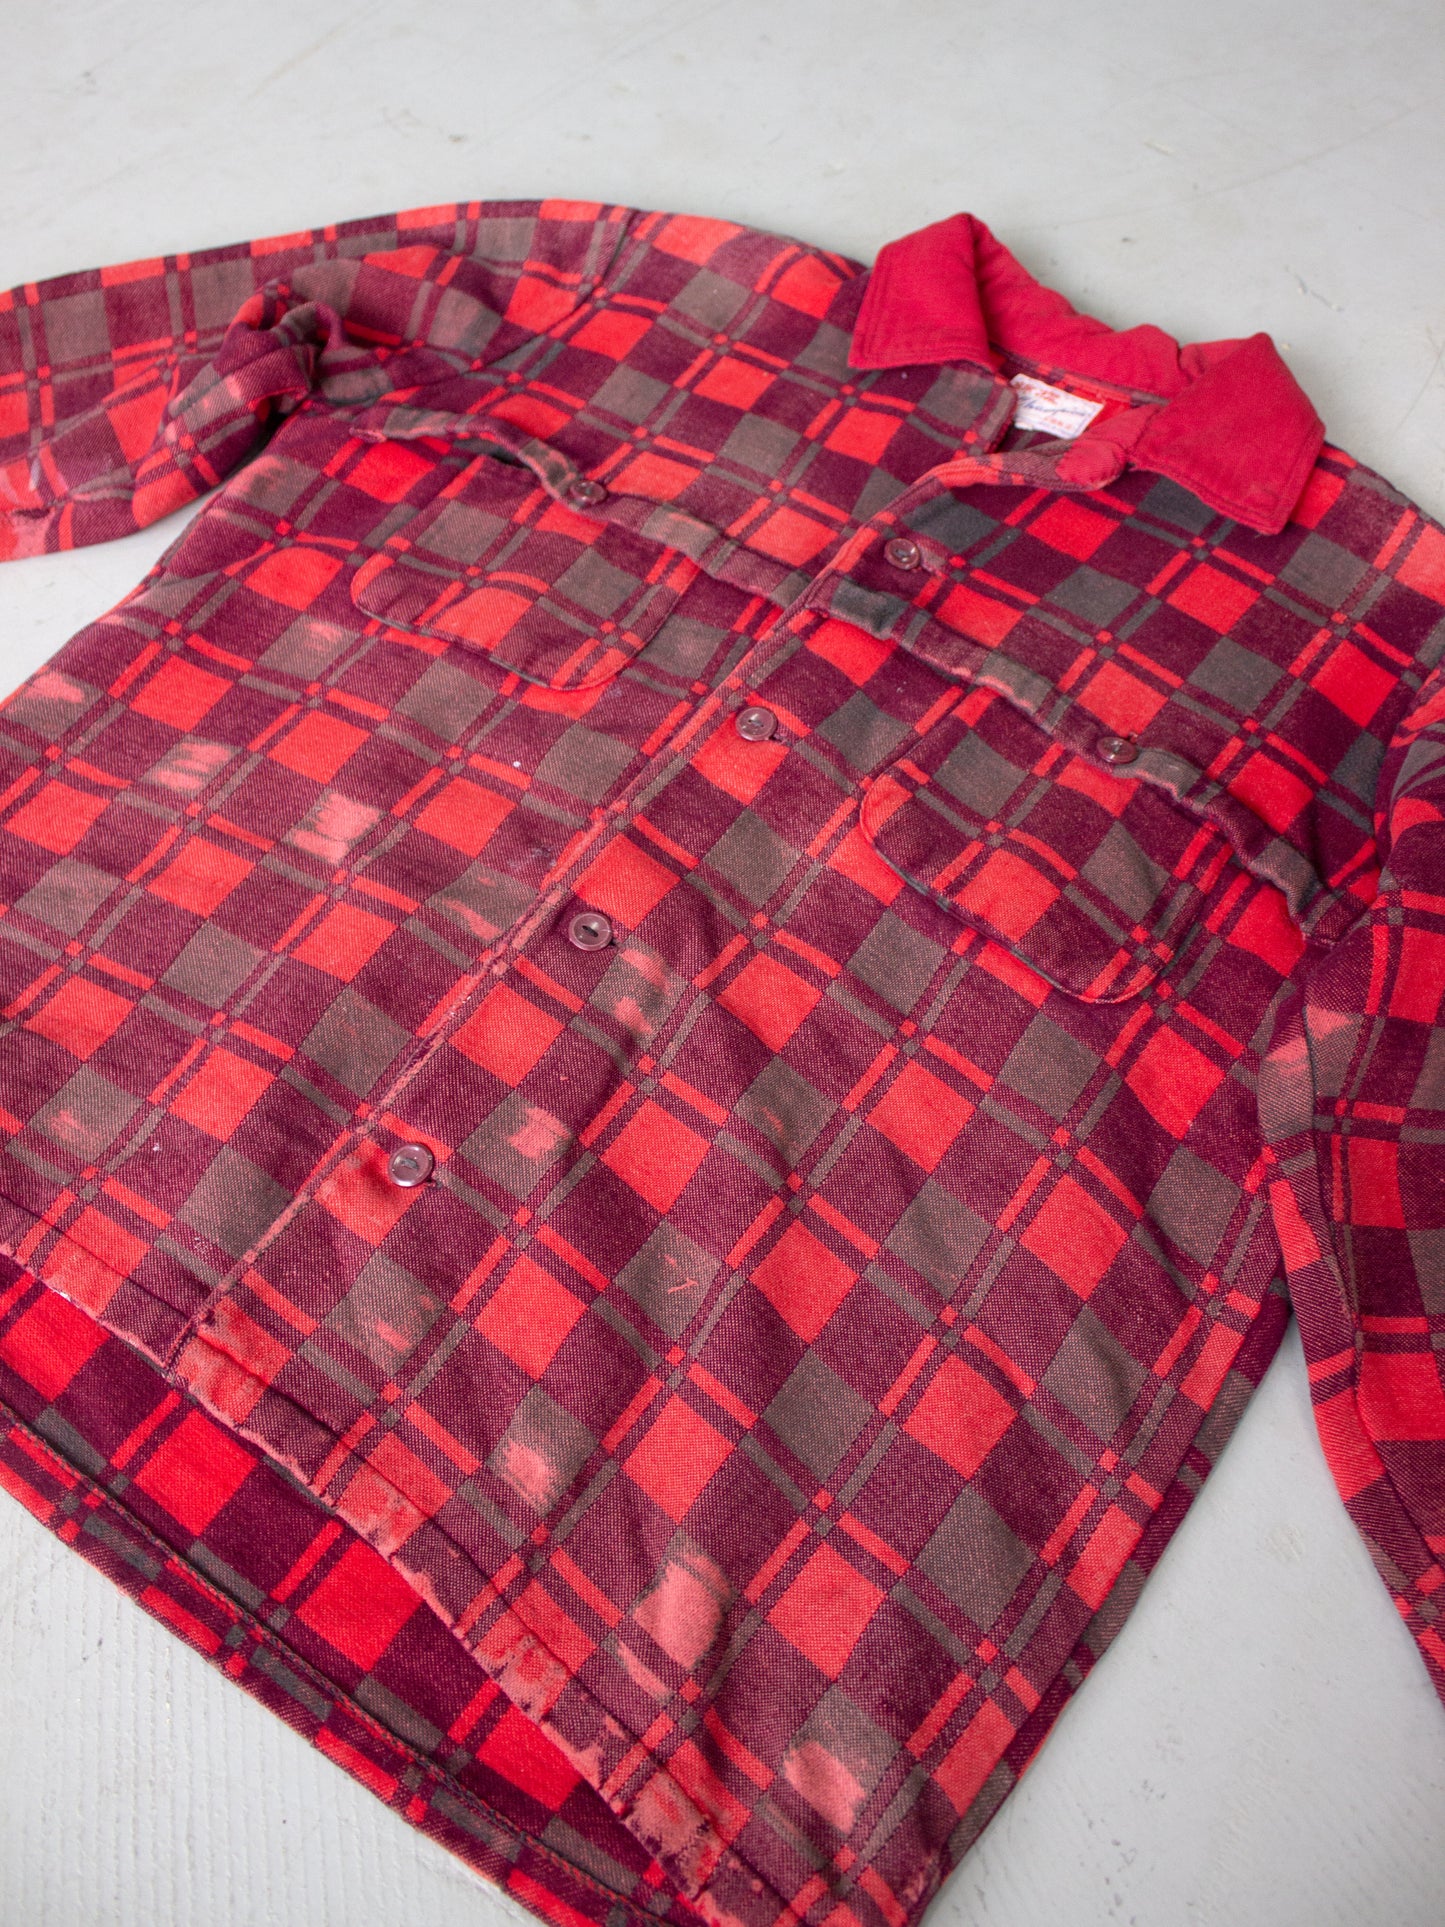 1970's-1980's Champion Plaid Flannel Cotton Shirt (Large-X Large)